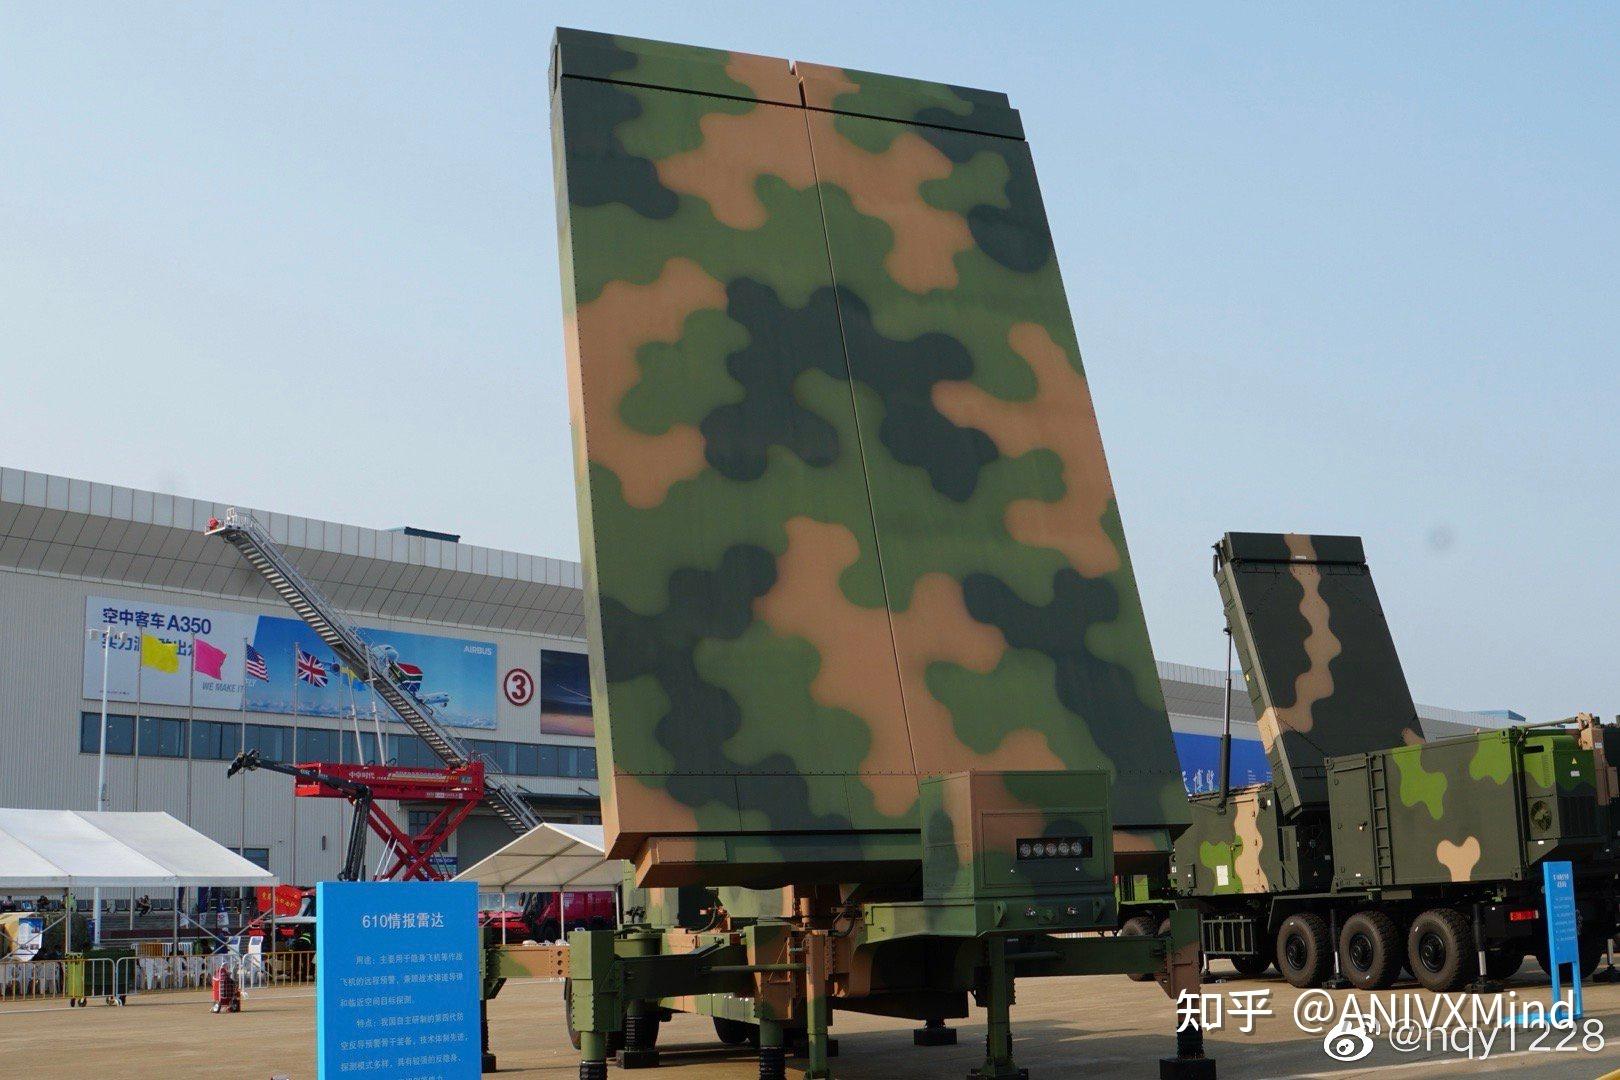 中电科38所研制的610雷达 ,也就是新一代高机动多功能雷达而且 空军